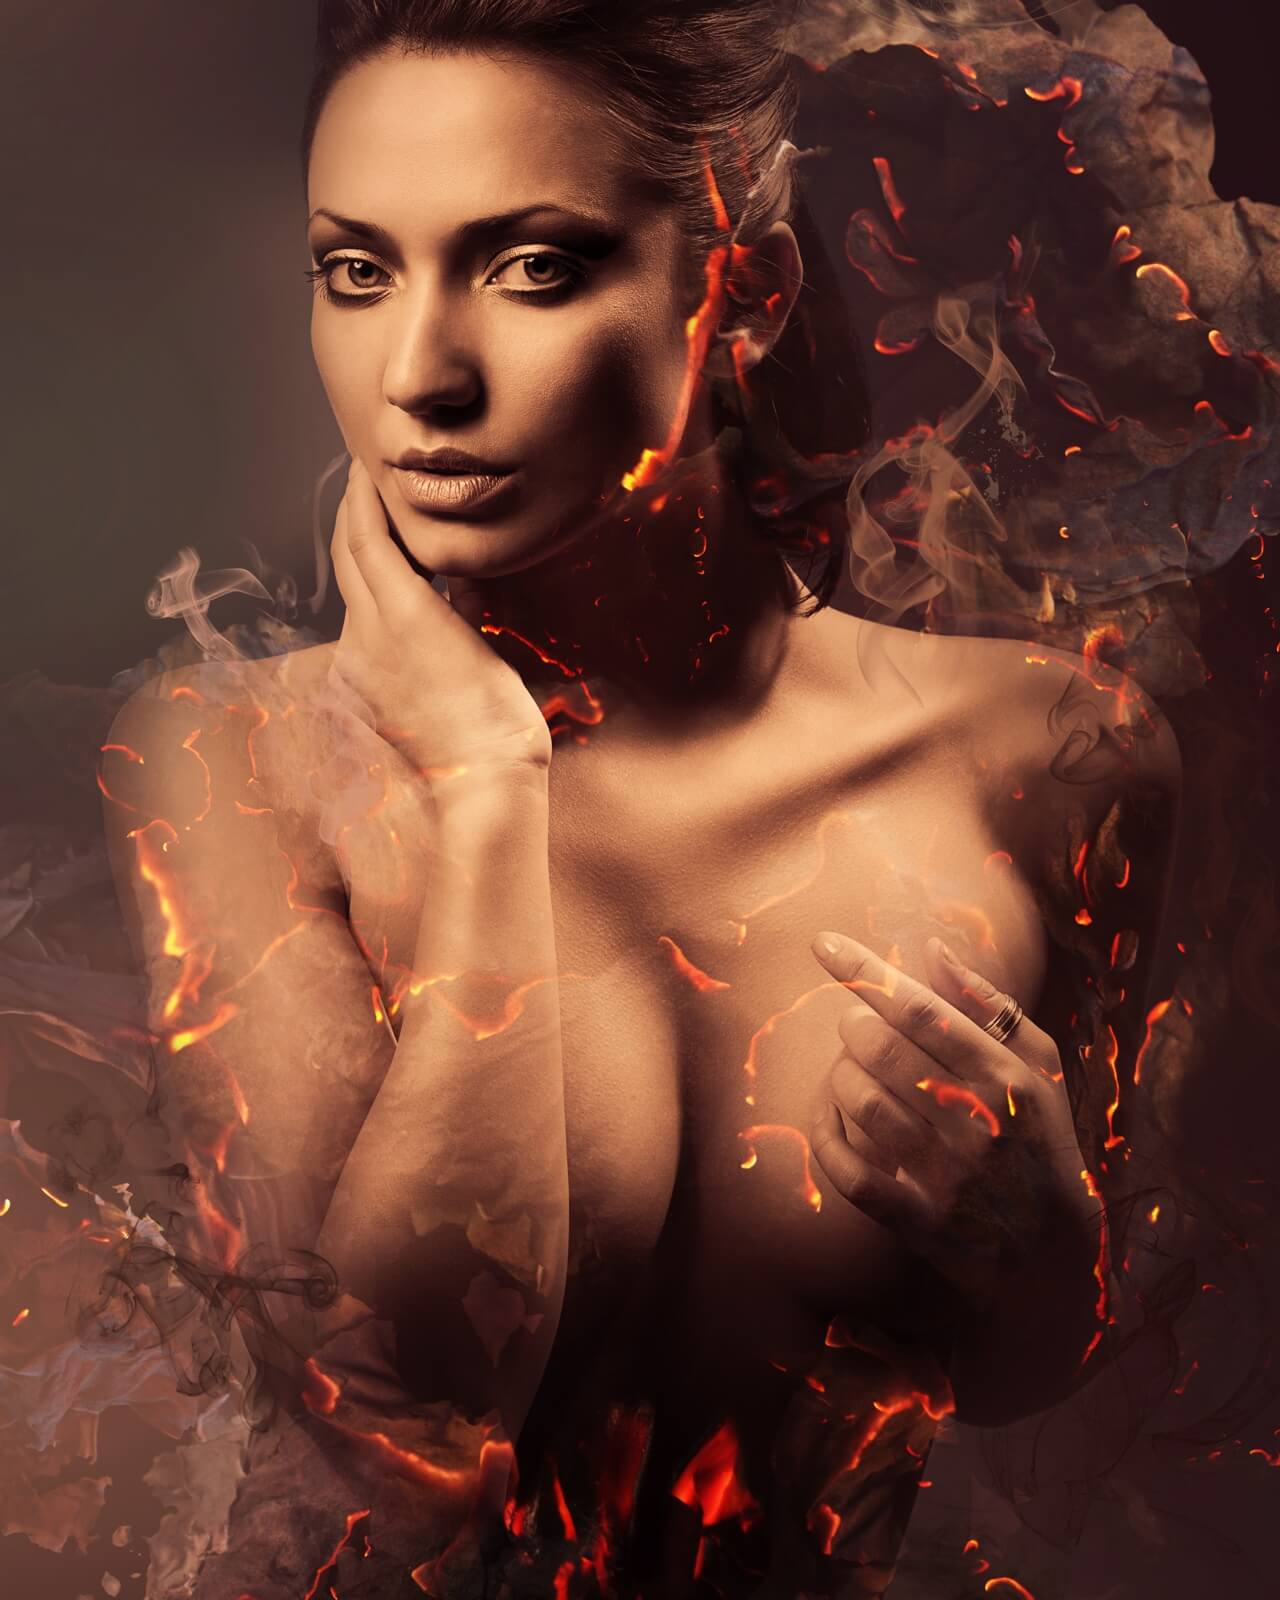 Vlies Tapete XXL Poster Fototapete Erotik Lady Fire